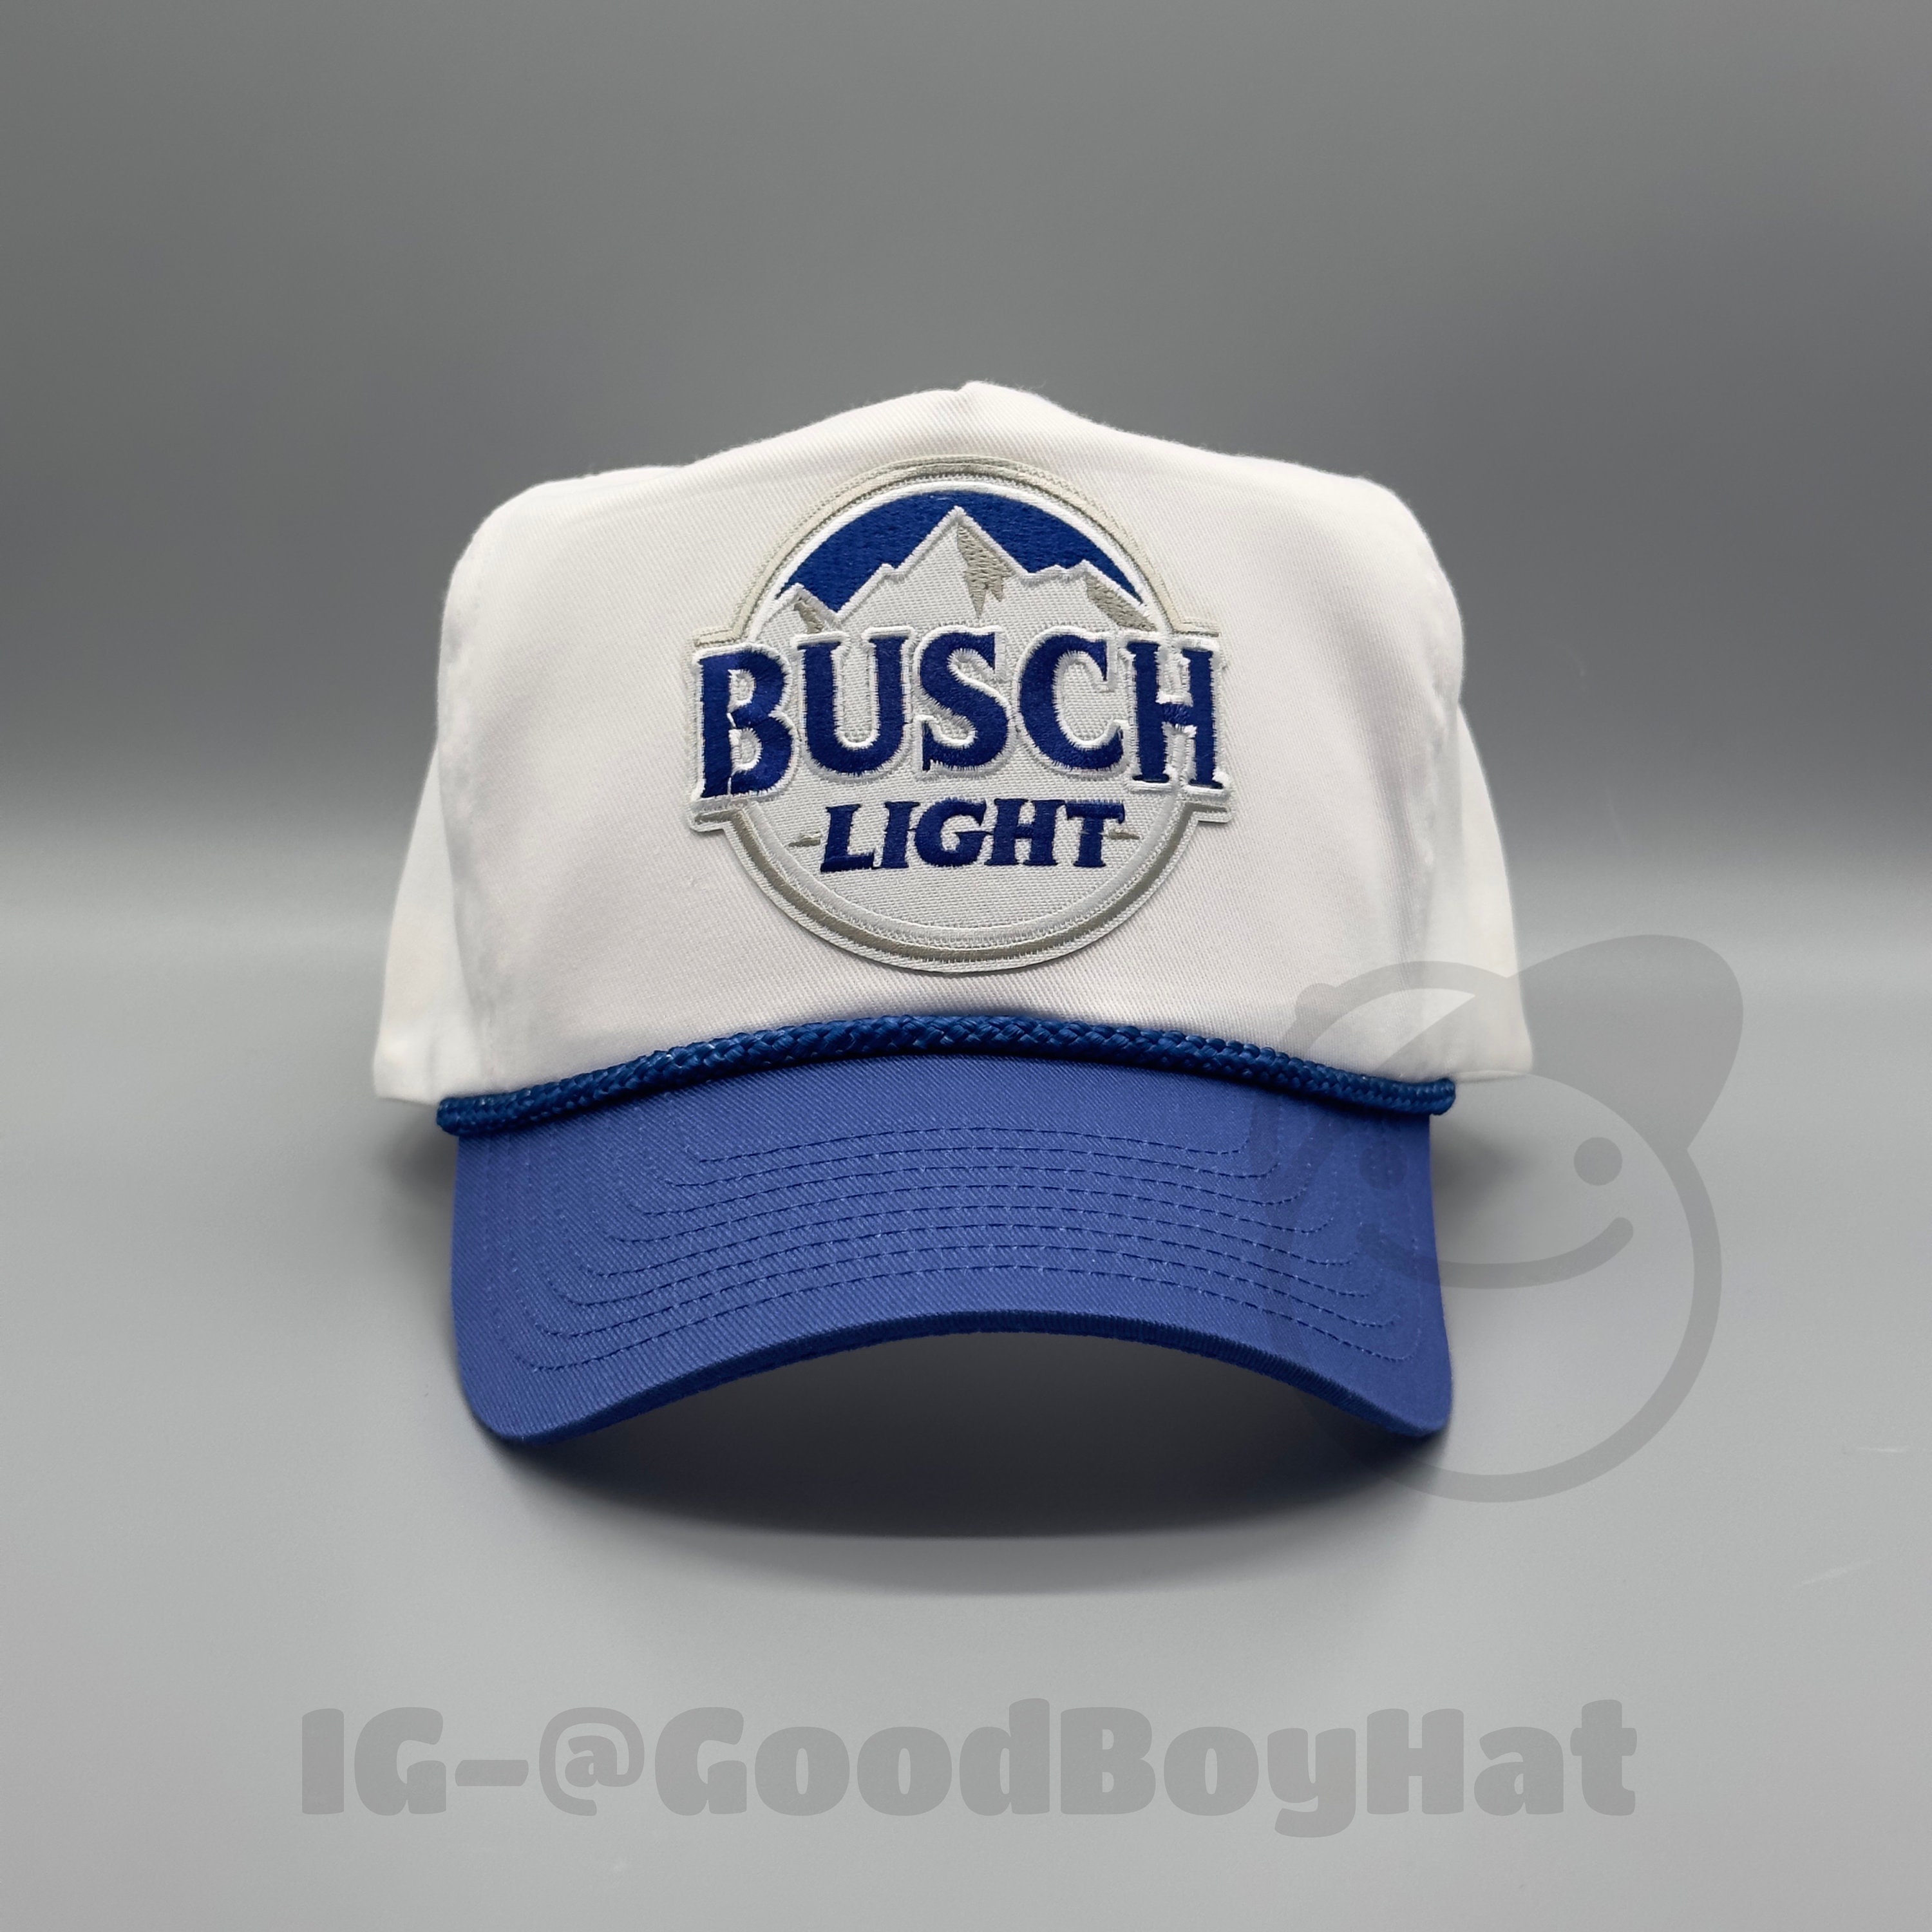 Busch Light Trucker Hat -  Canada